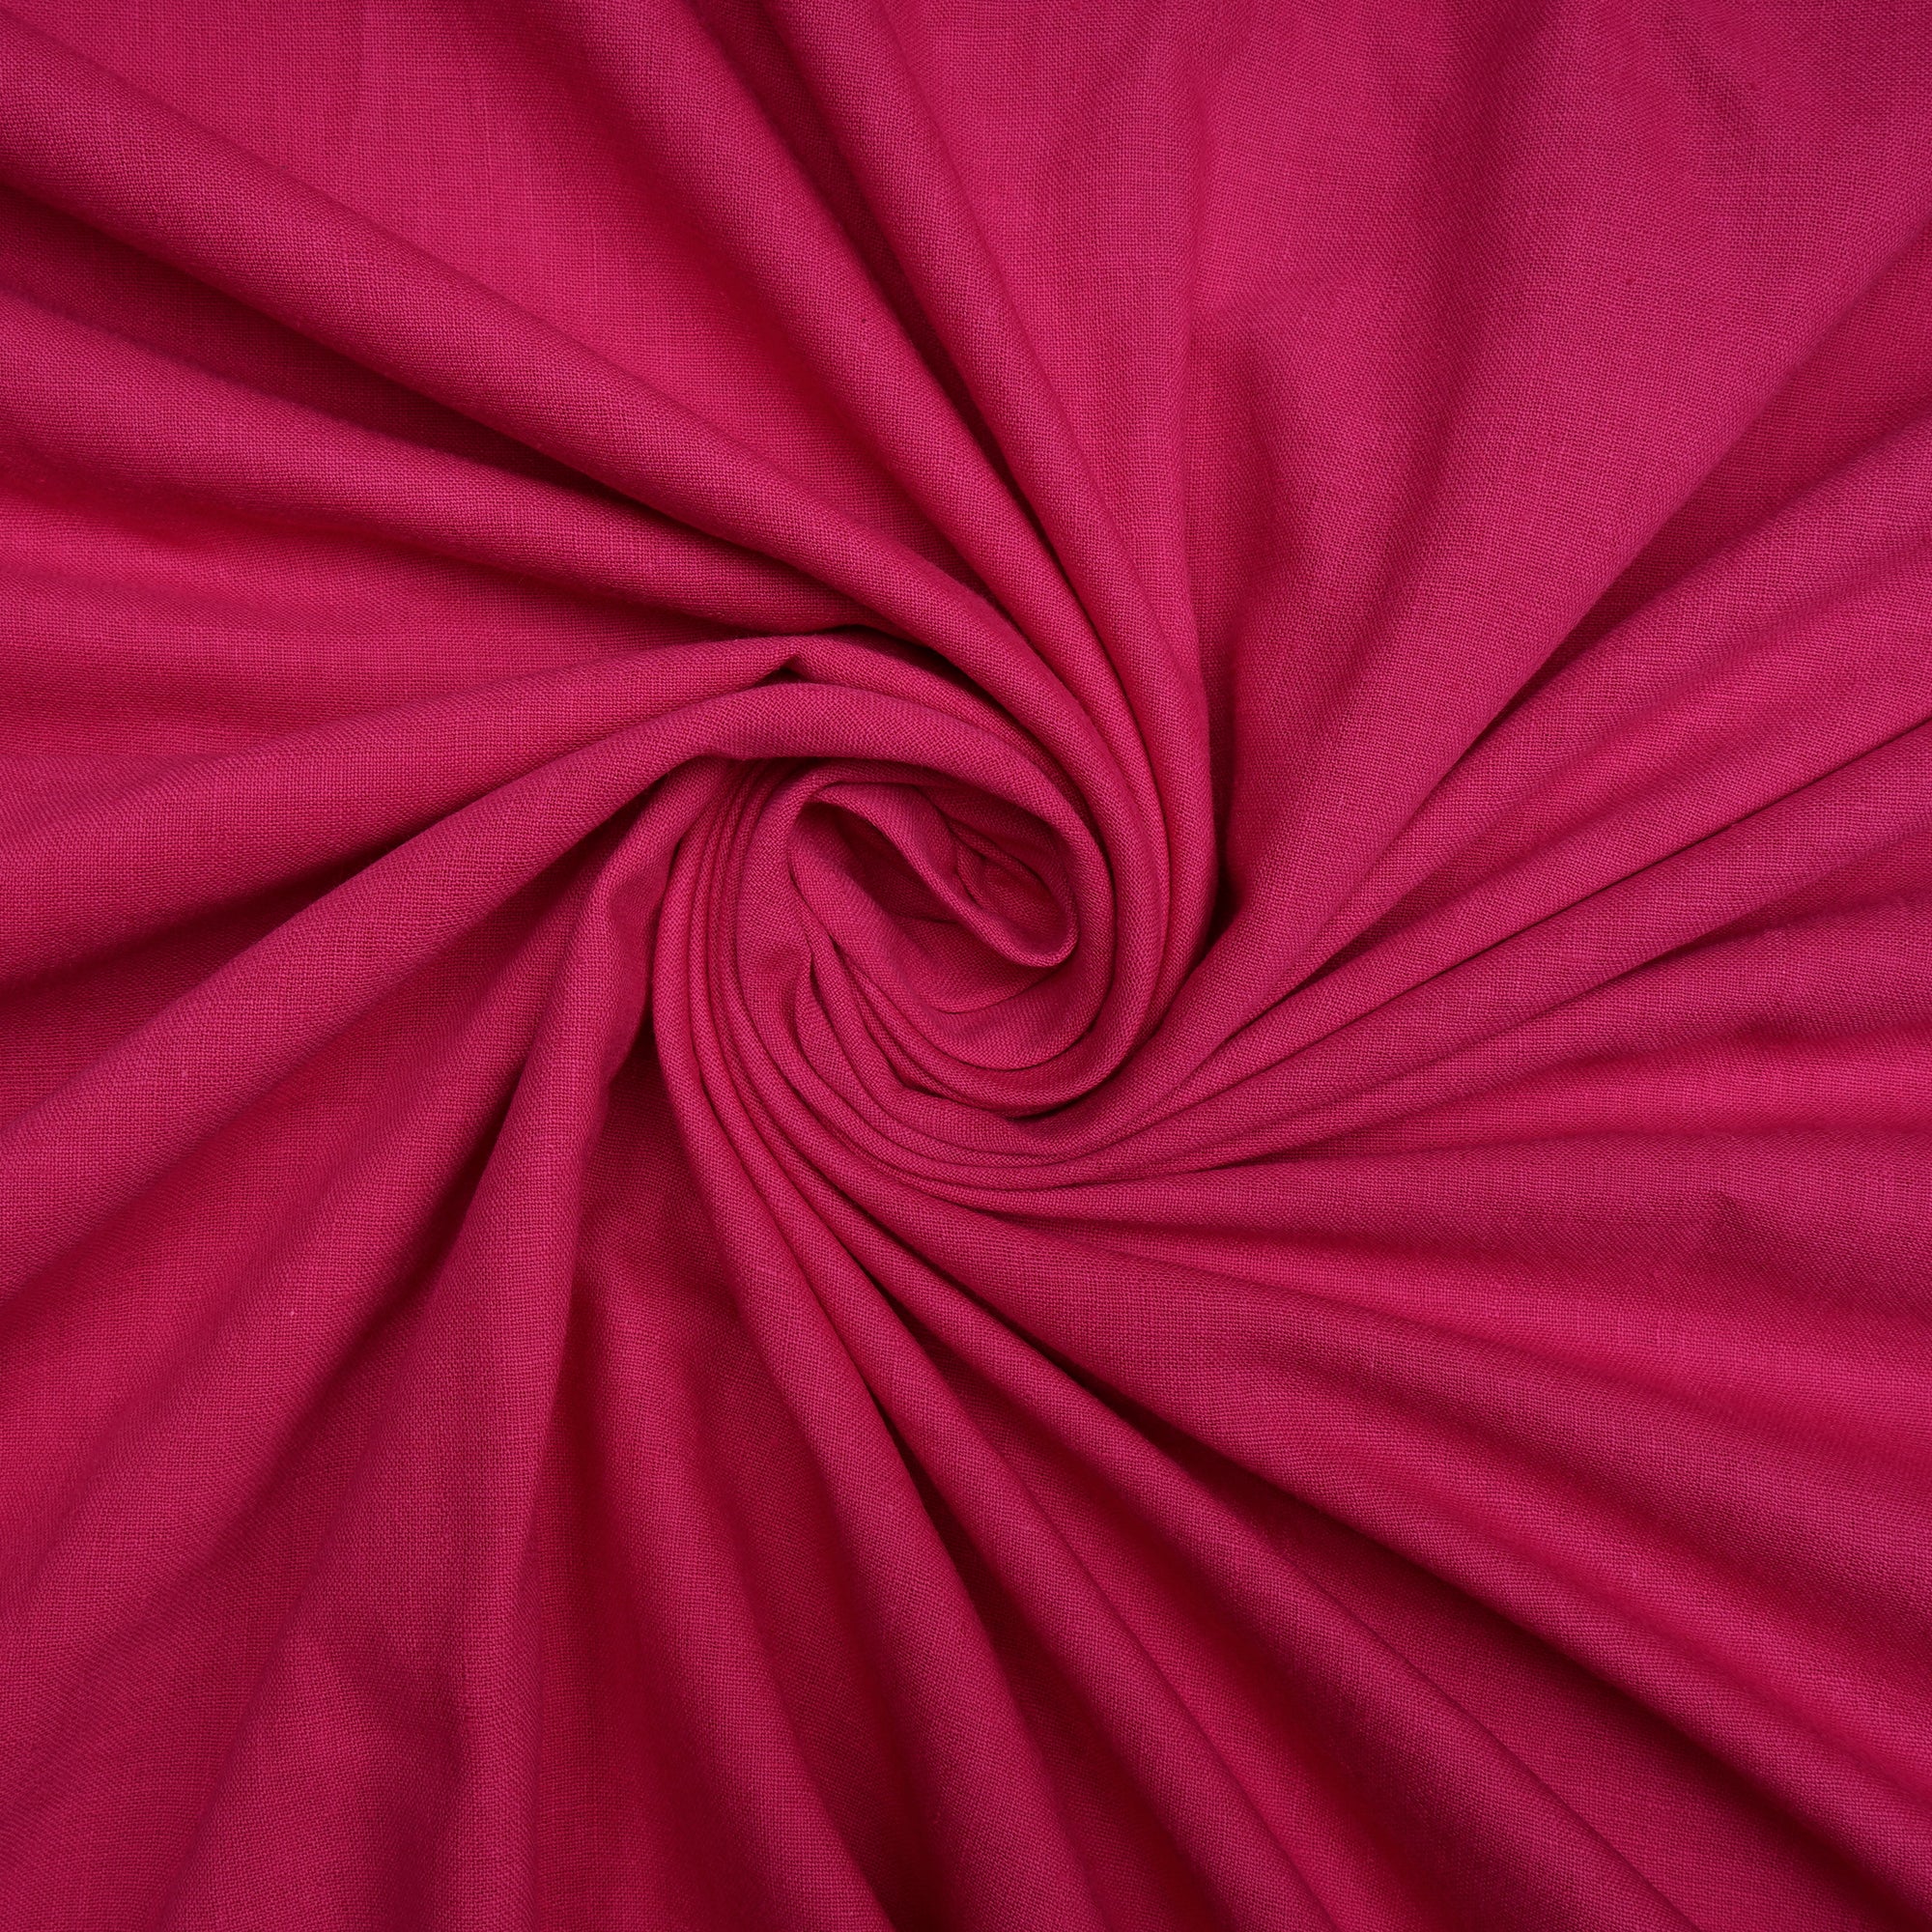 Dark Pink Handwoven Handspun Muslin Cotton Fabric